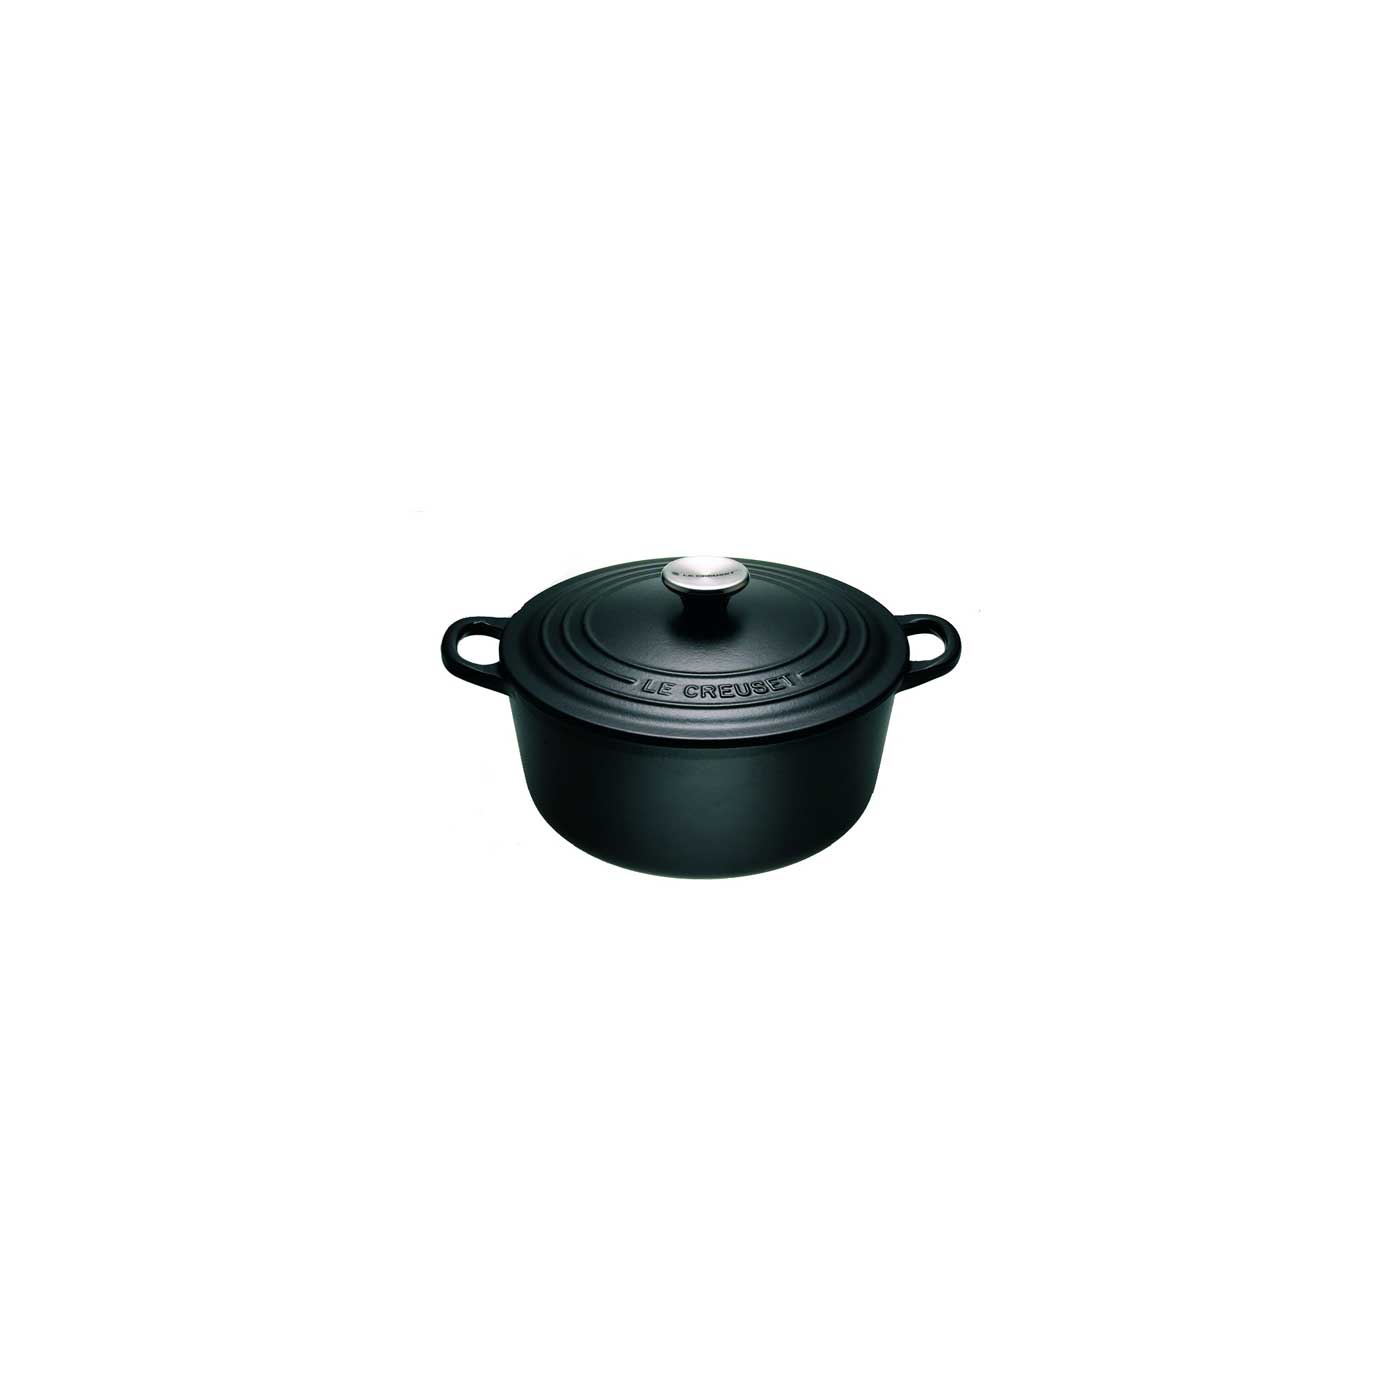 Le Creuset Le Creuset cast iron 24cm Satin Black round casserole dish